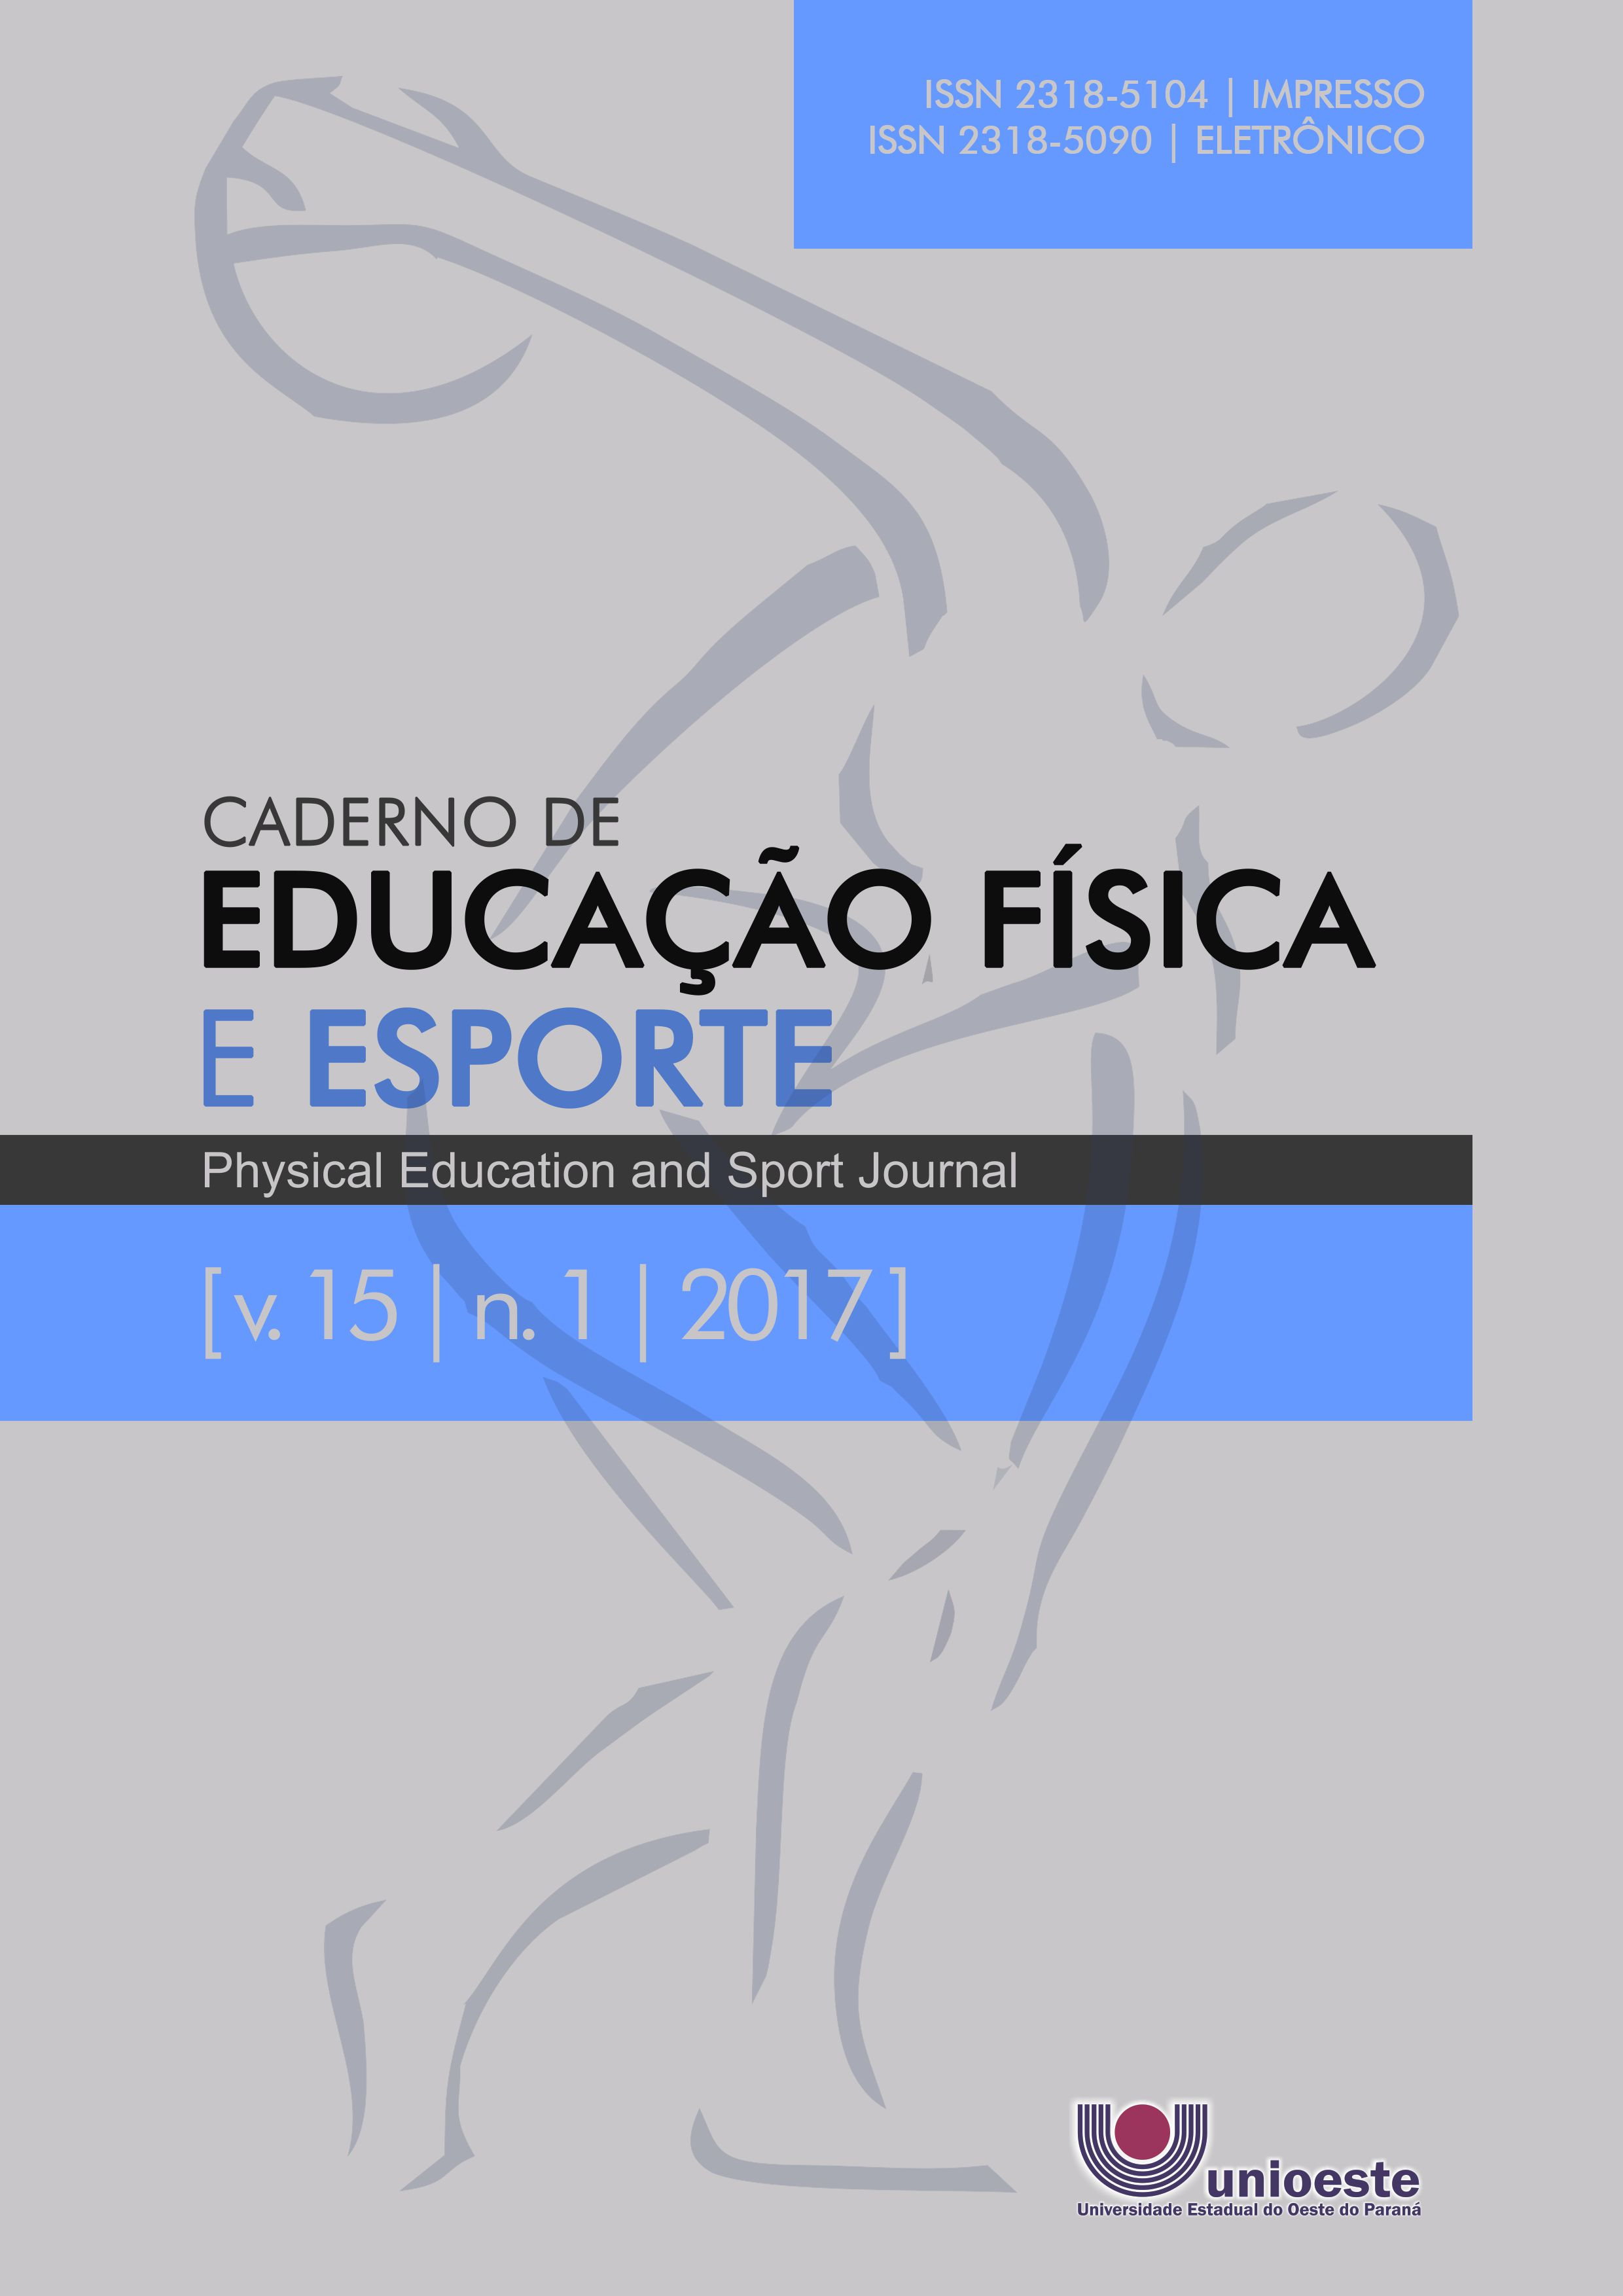 					Visualizar v. 15 n. 1 (2017): Caderno de Educação Física e Esporte
				